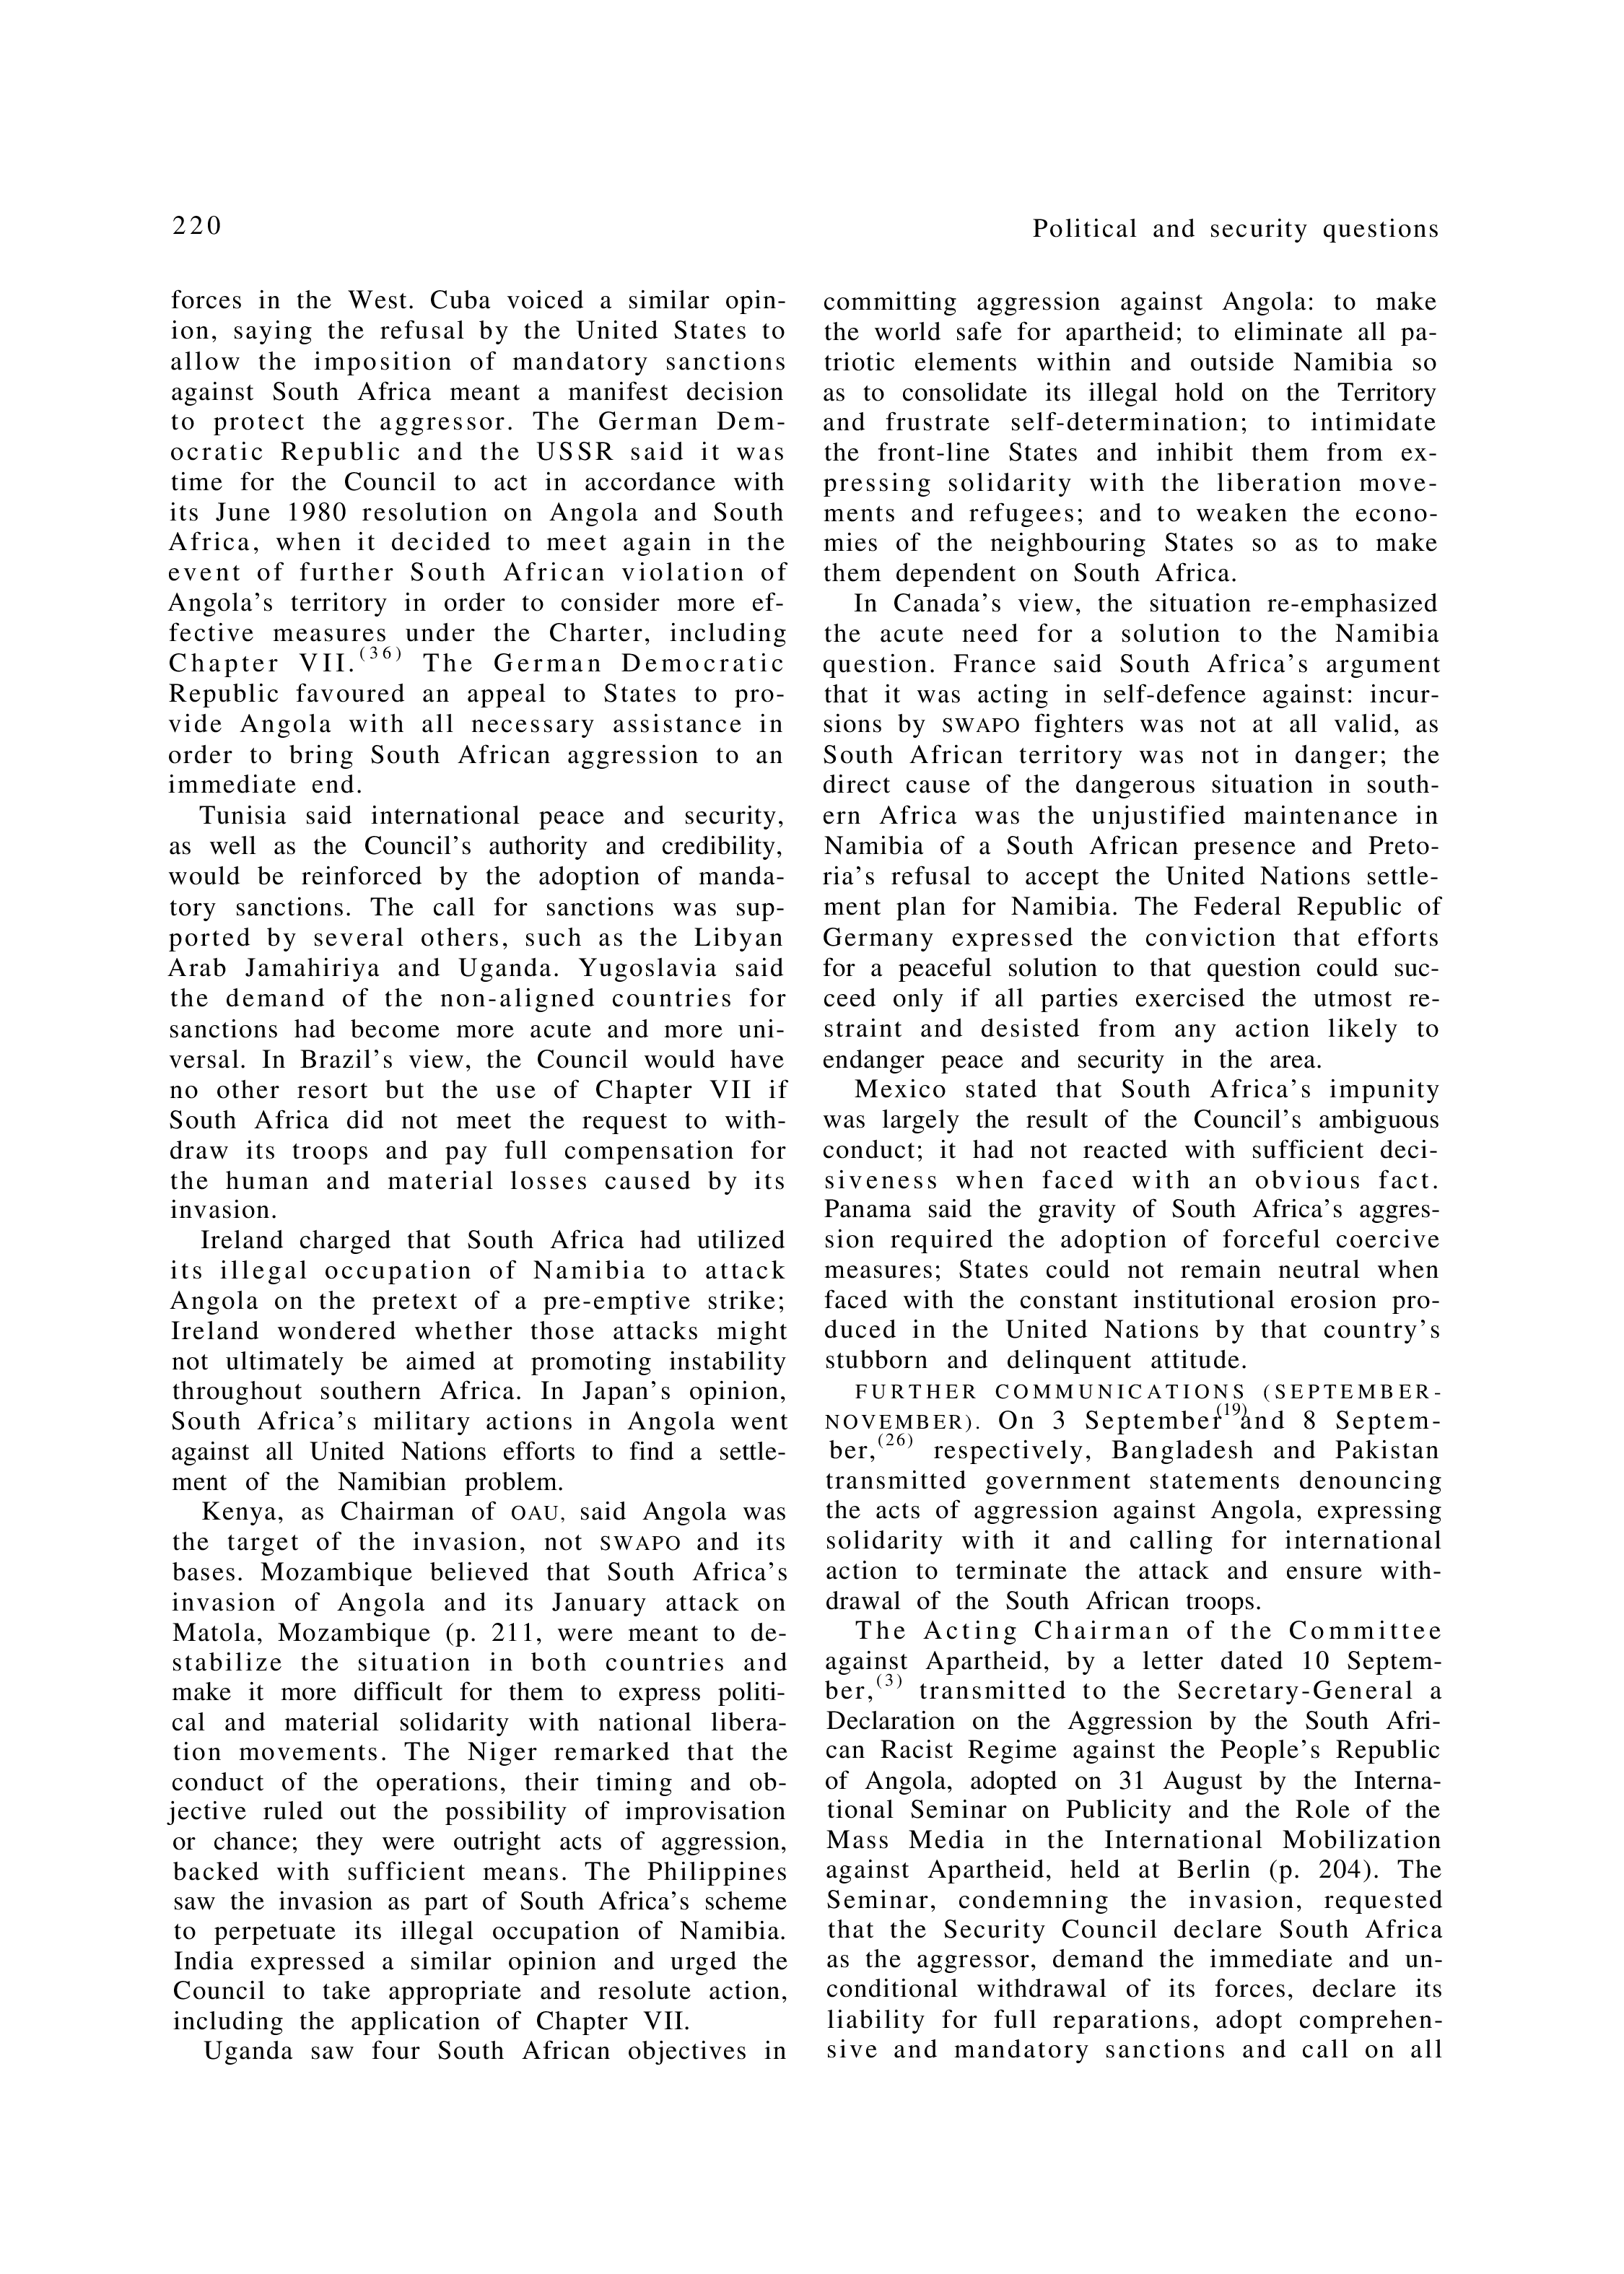 YUN Volume_Page 1981_232 excerpt